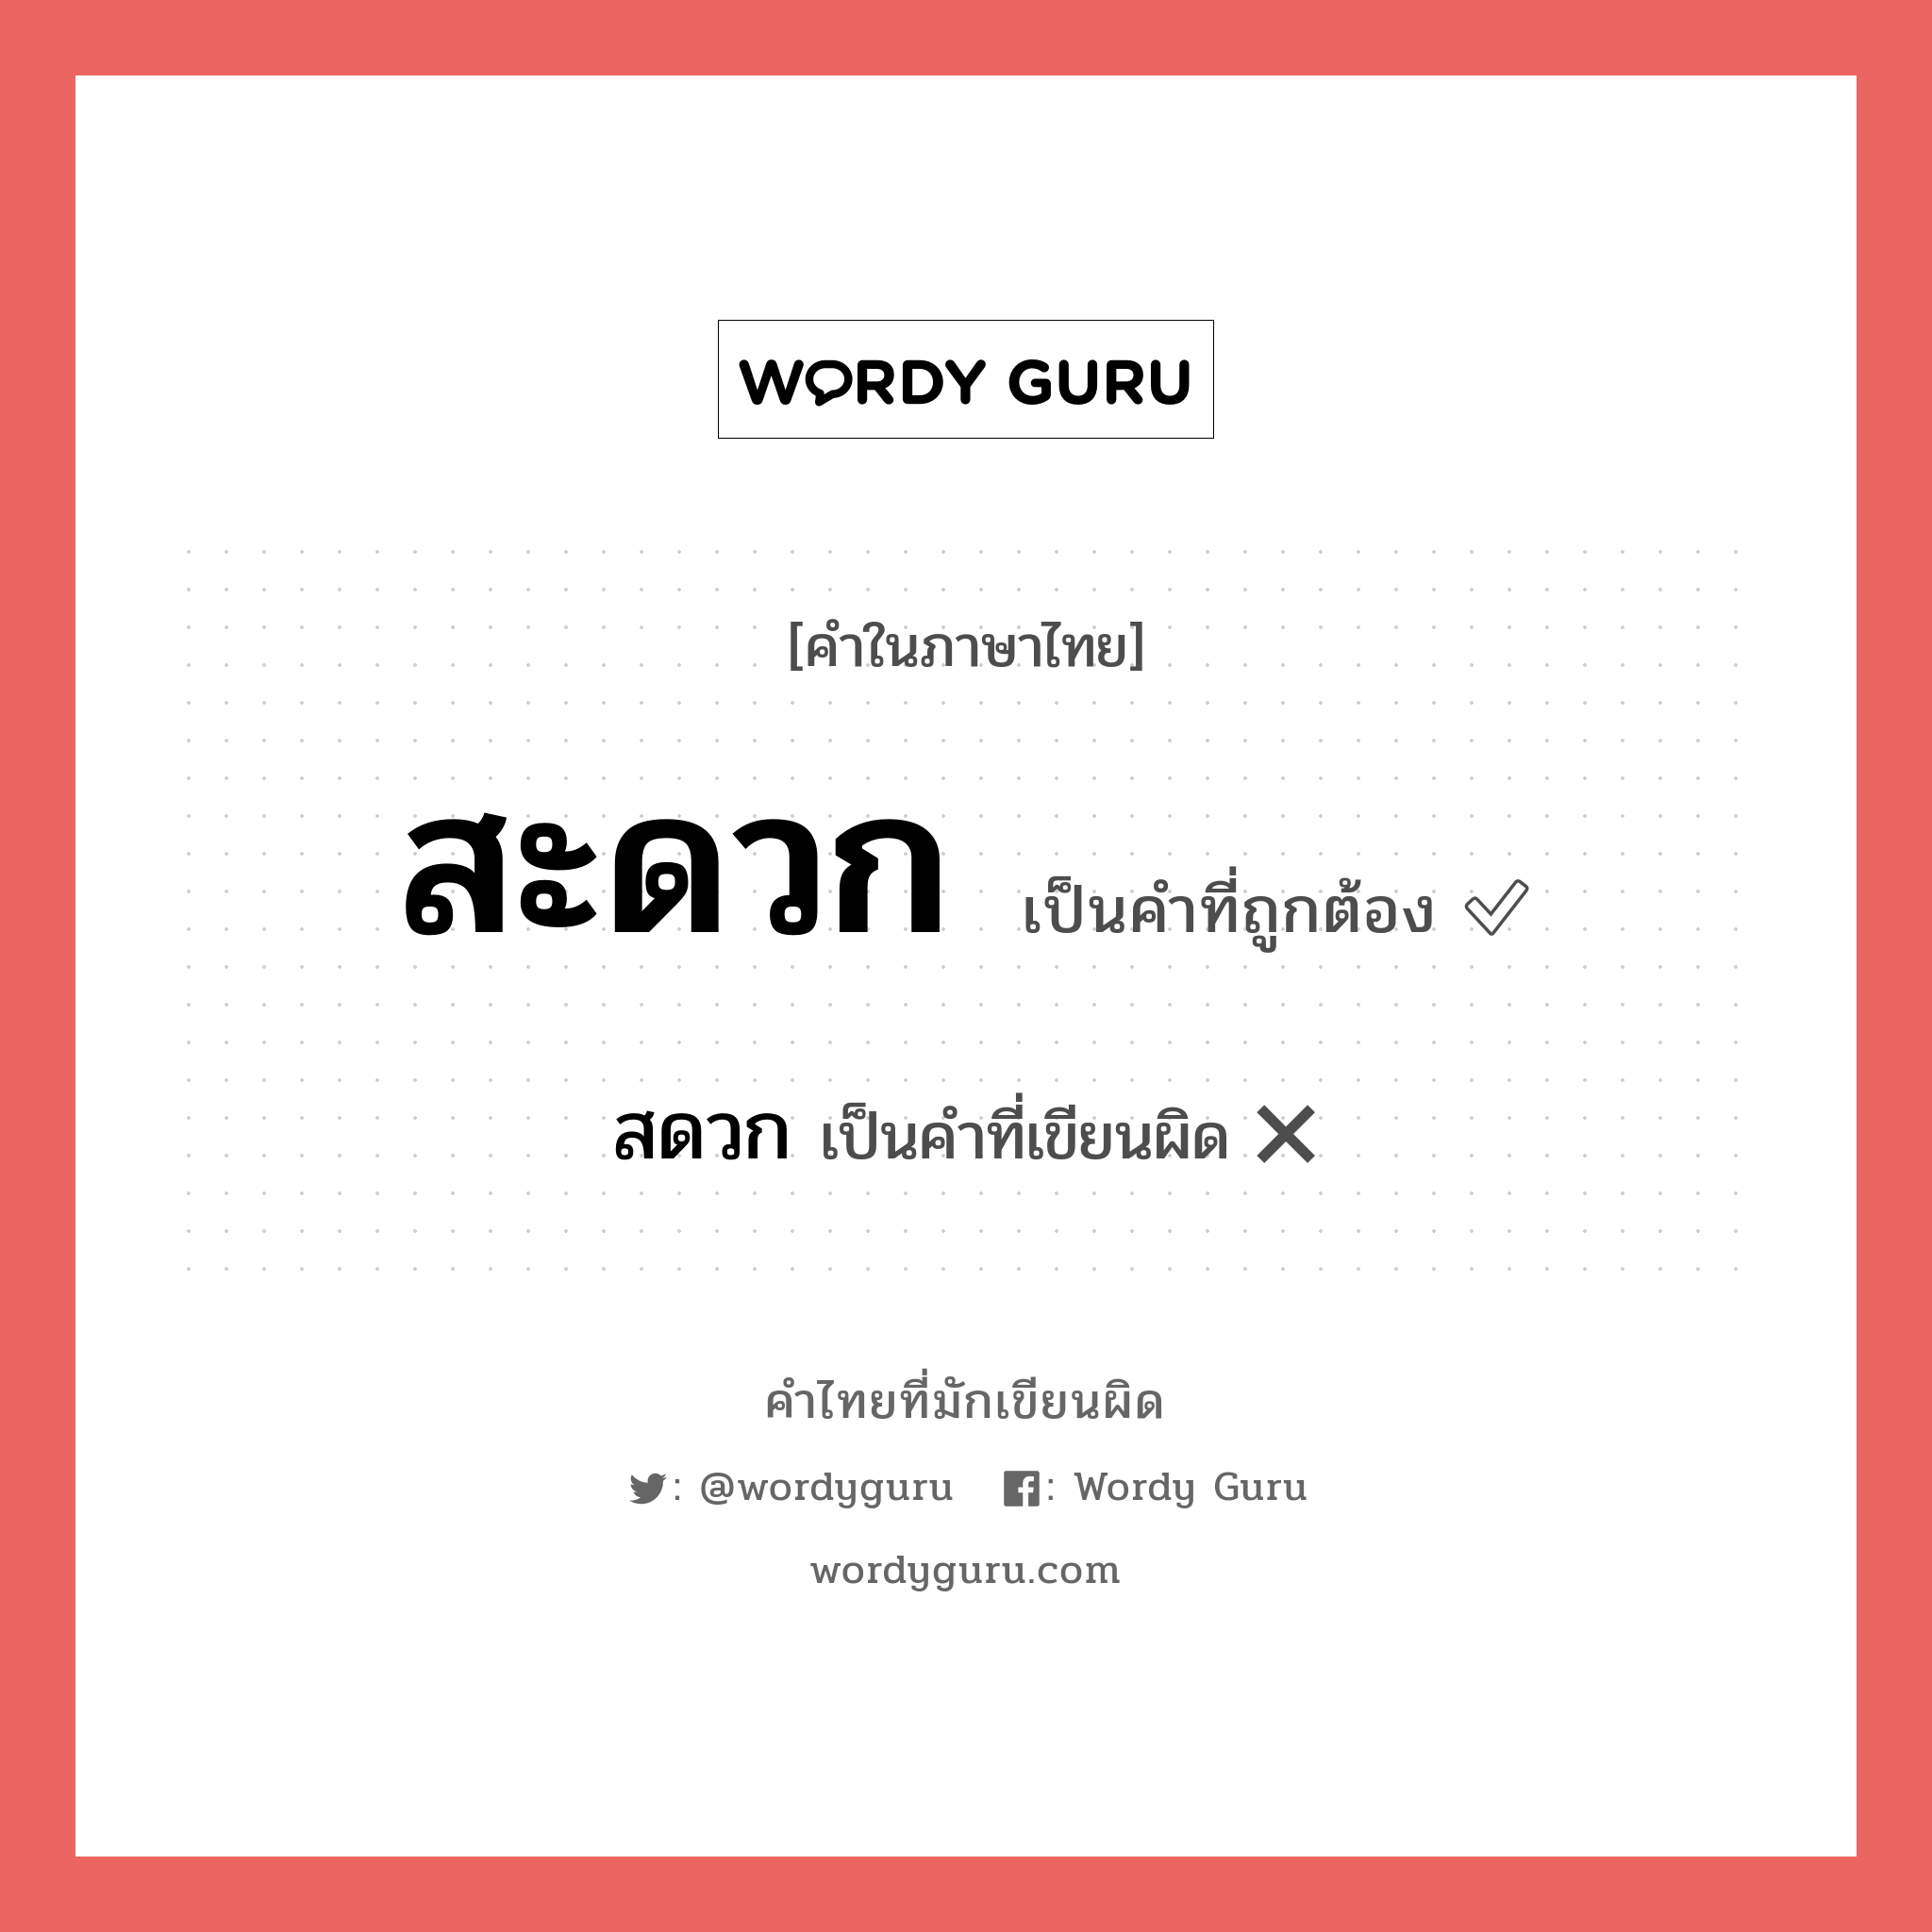 "สะดวก" กับ "สดวก" เขียนอย่างไร คำไหนที่ถูกต้อง - คำไทยที่มักเขียนผิด